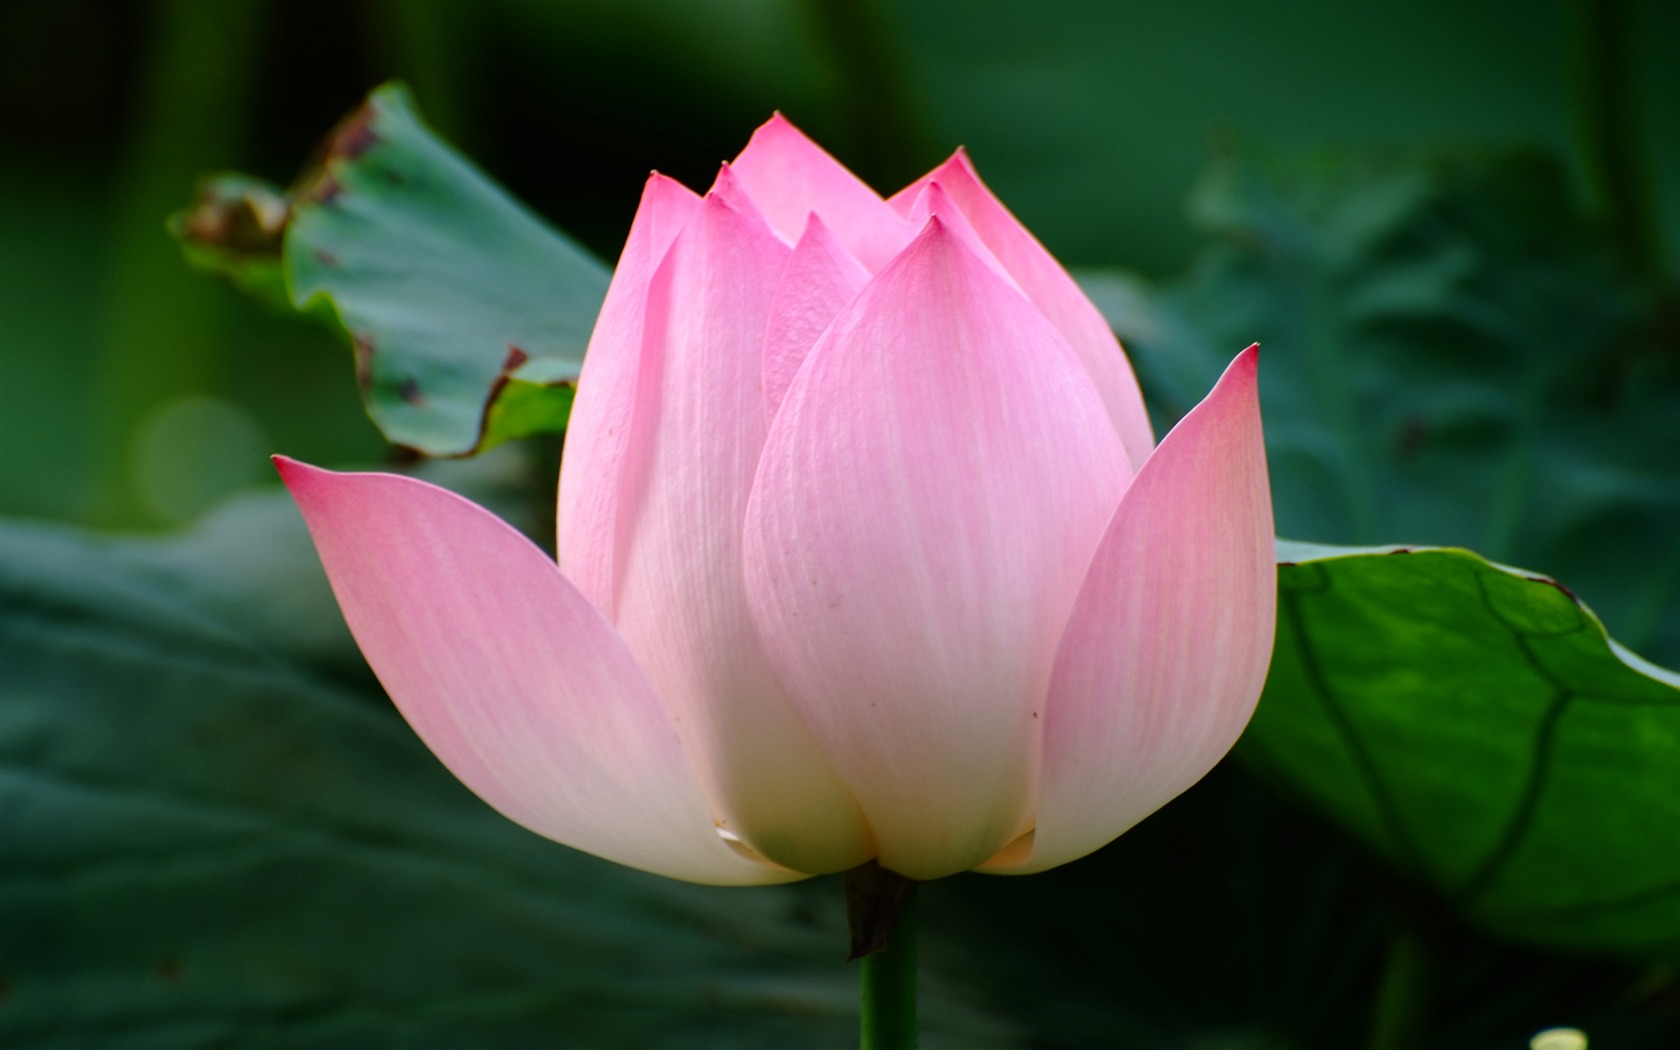 Rose Garden of the Lotus (rebar works) #6 - 1680x1050